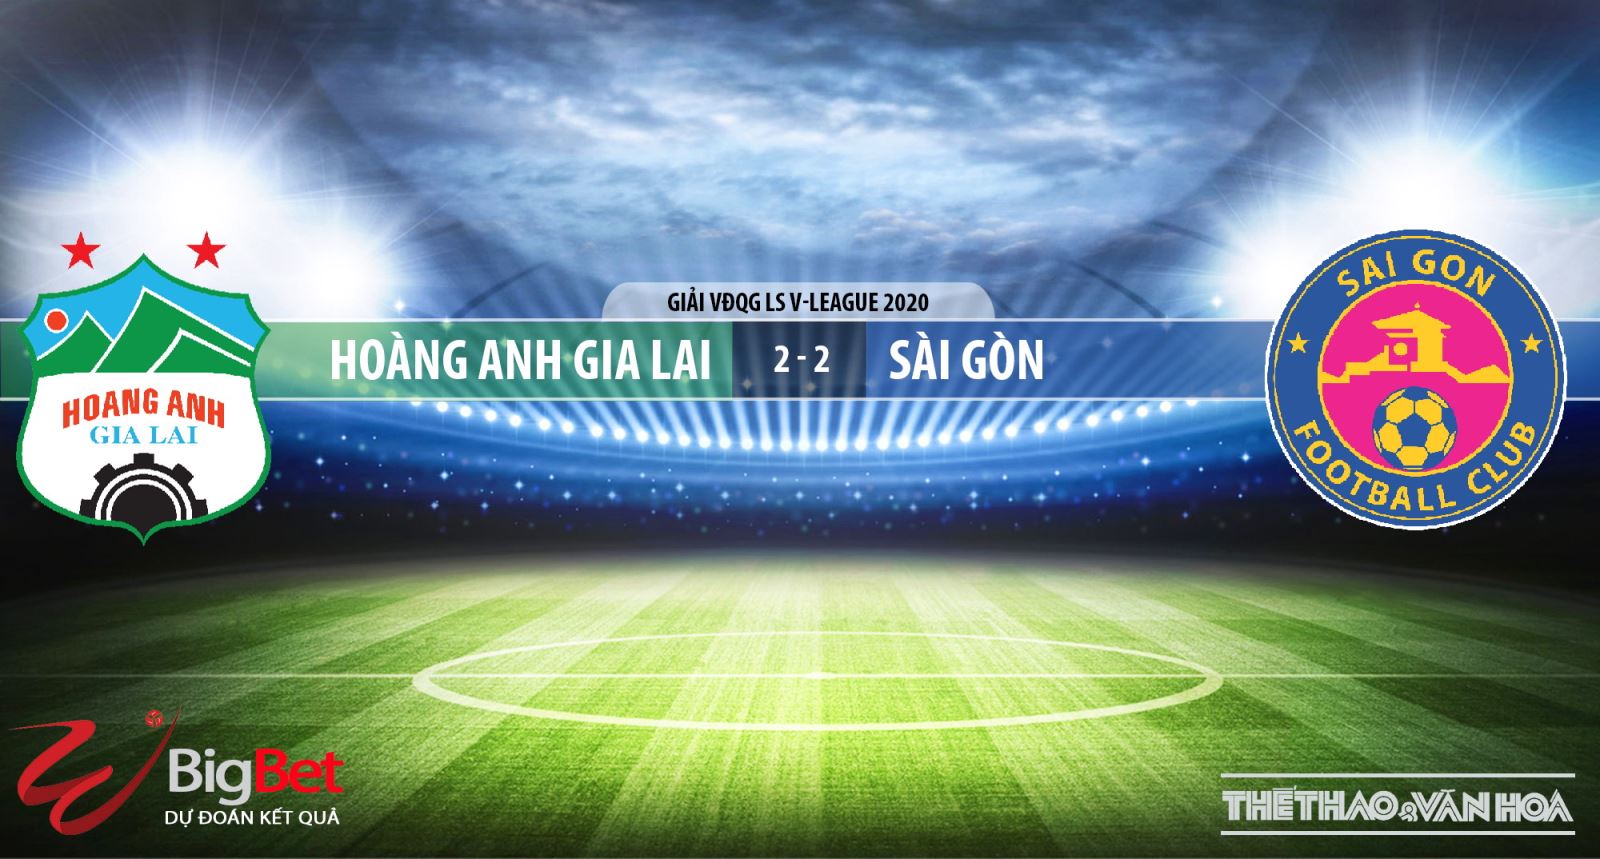 HAGL đấu với Sài Gòn, HAGL, Sài Gòn, kèo bóng đá, nhận định bóng đá bóng đá, nhận định, dự đoán, bóng đá, trực tiếp bóng đá